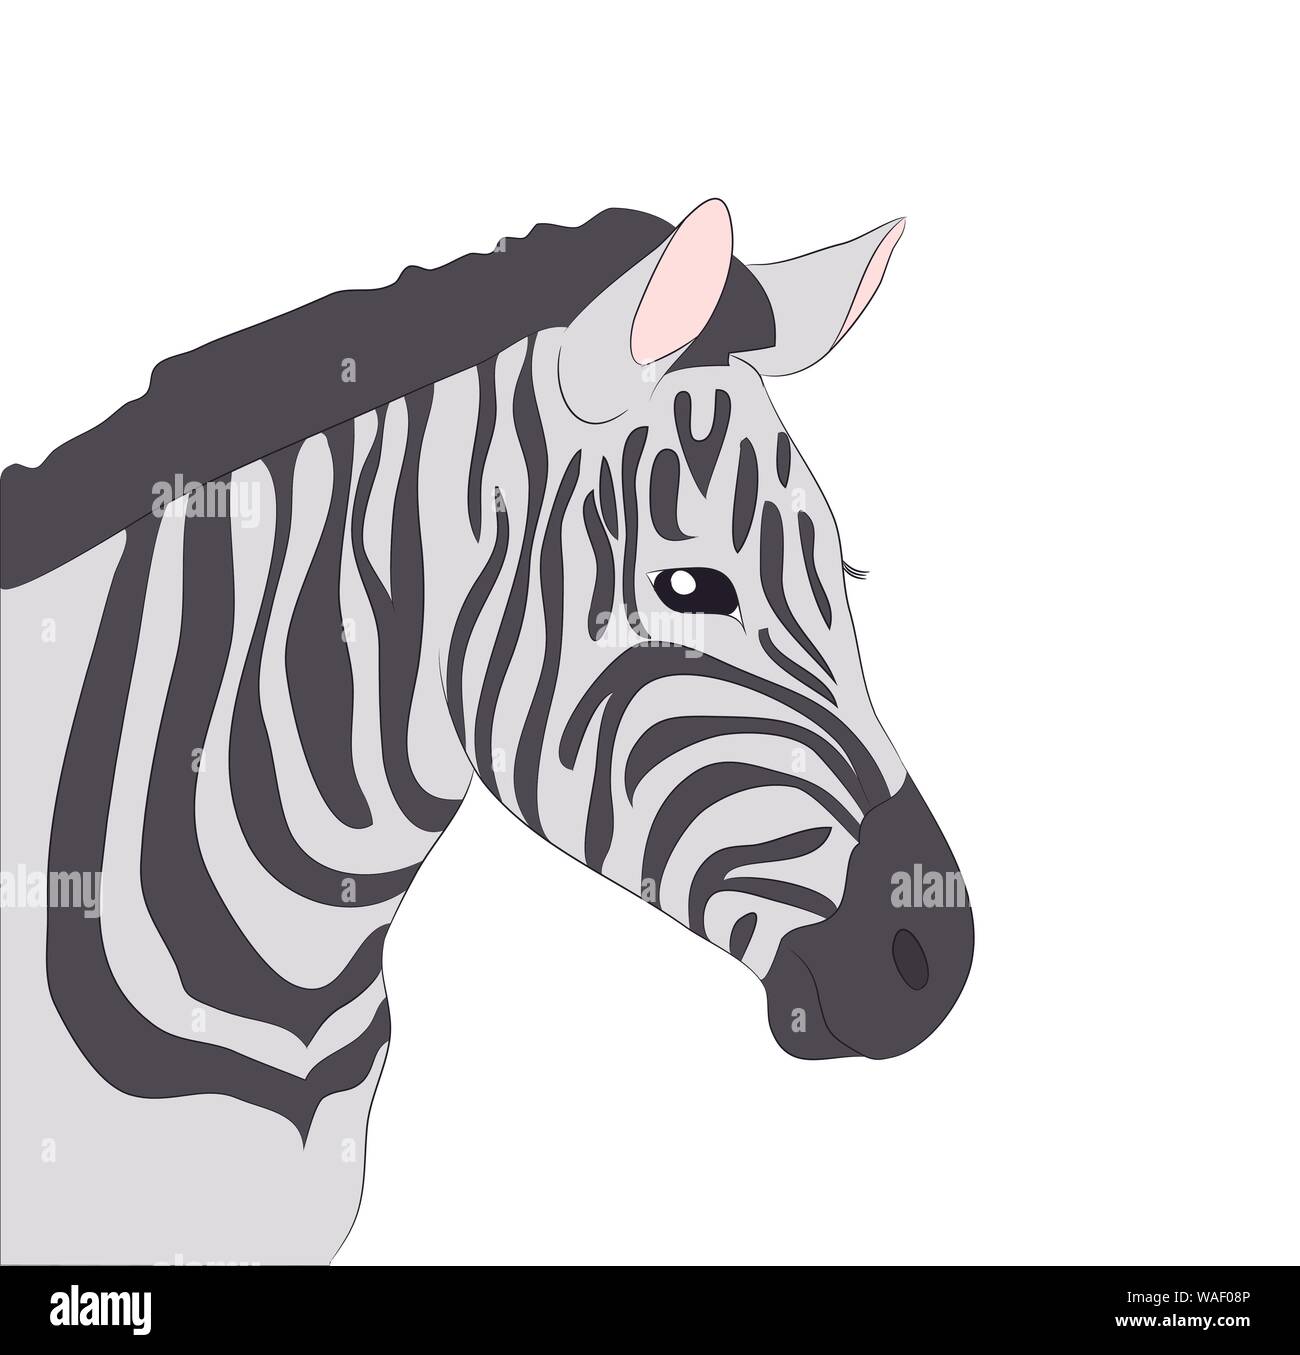 Portrait de zebra dessin couleur, vecteur, fond blanc Illustration de Vecteur